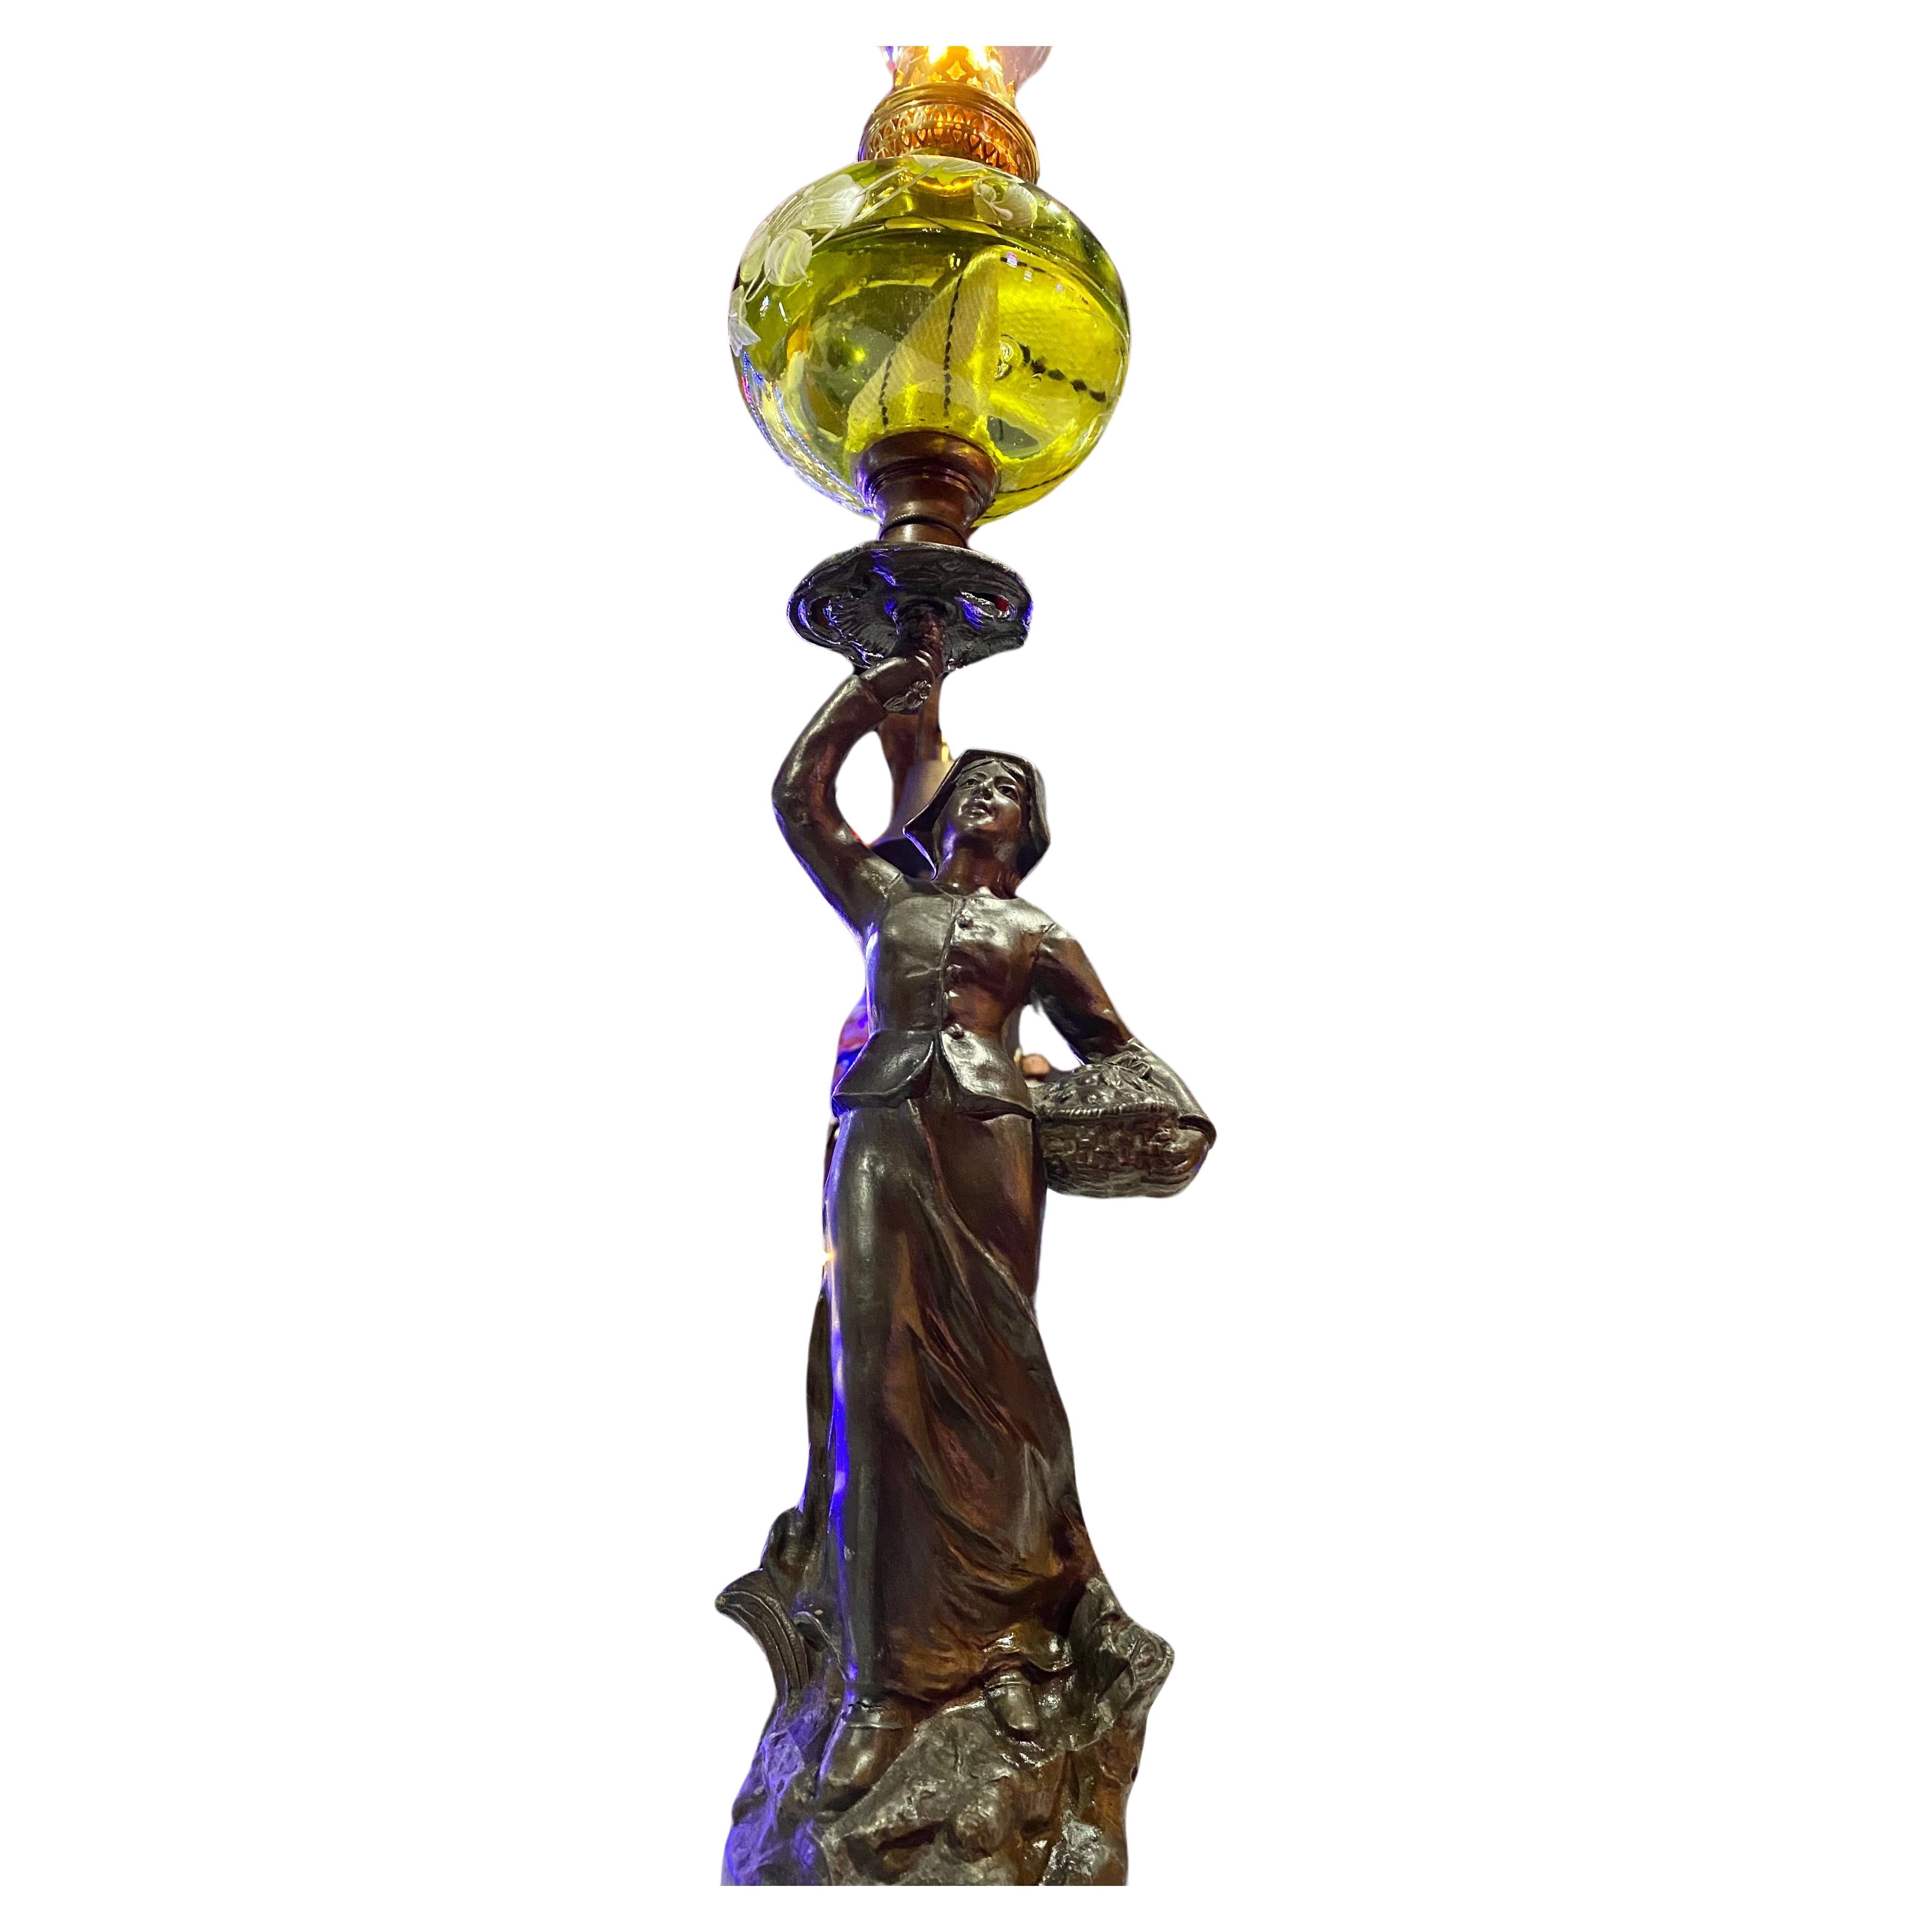 Importante lampe torchère à huile Art Nouveau du 19ème siècle avec un abat-jour en verre vert floral peint à la main et une cheminée en verre, reposant sur une base circulaire en faux bois avec un placard en laiton indiquant ; LA CUEILLETTE,
Par